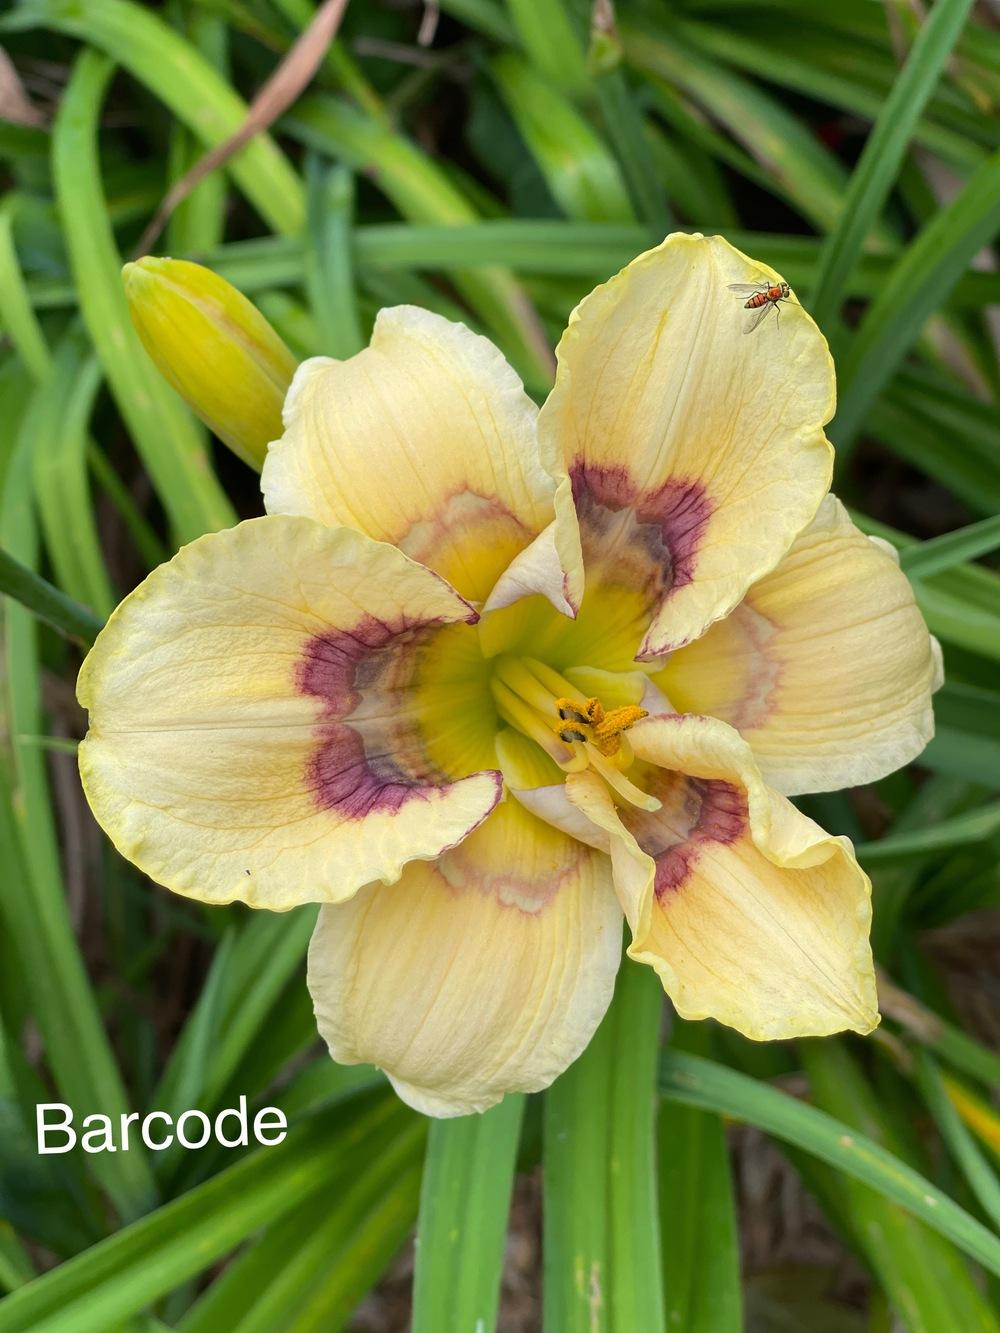 Photo of Daylily (Hemerocallis 'Barcode') uploaded by Whiteblee